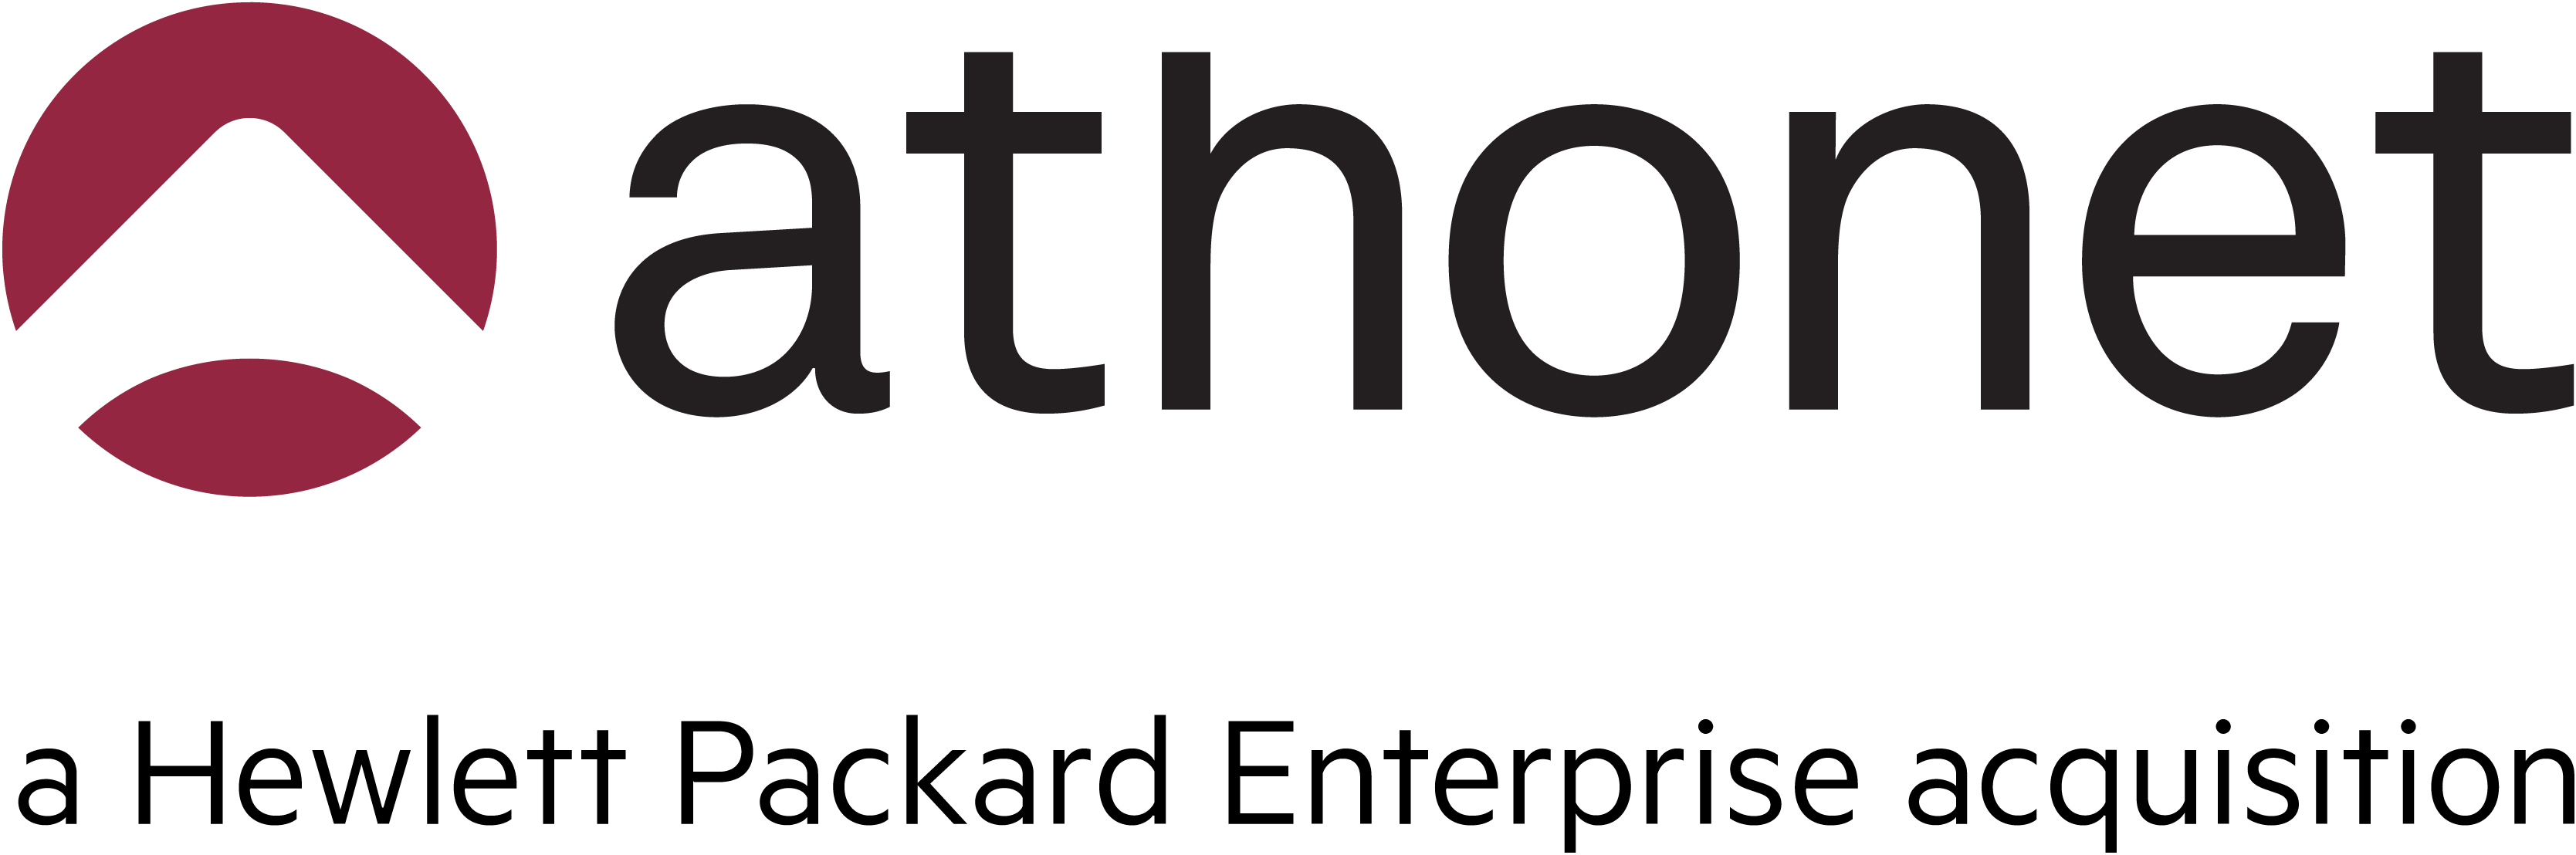 Athonet logo